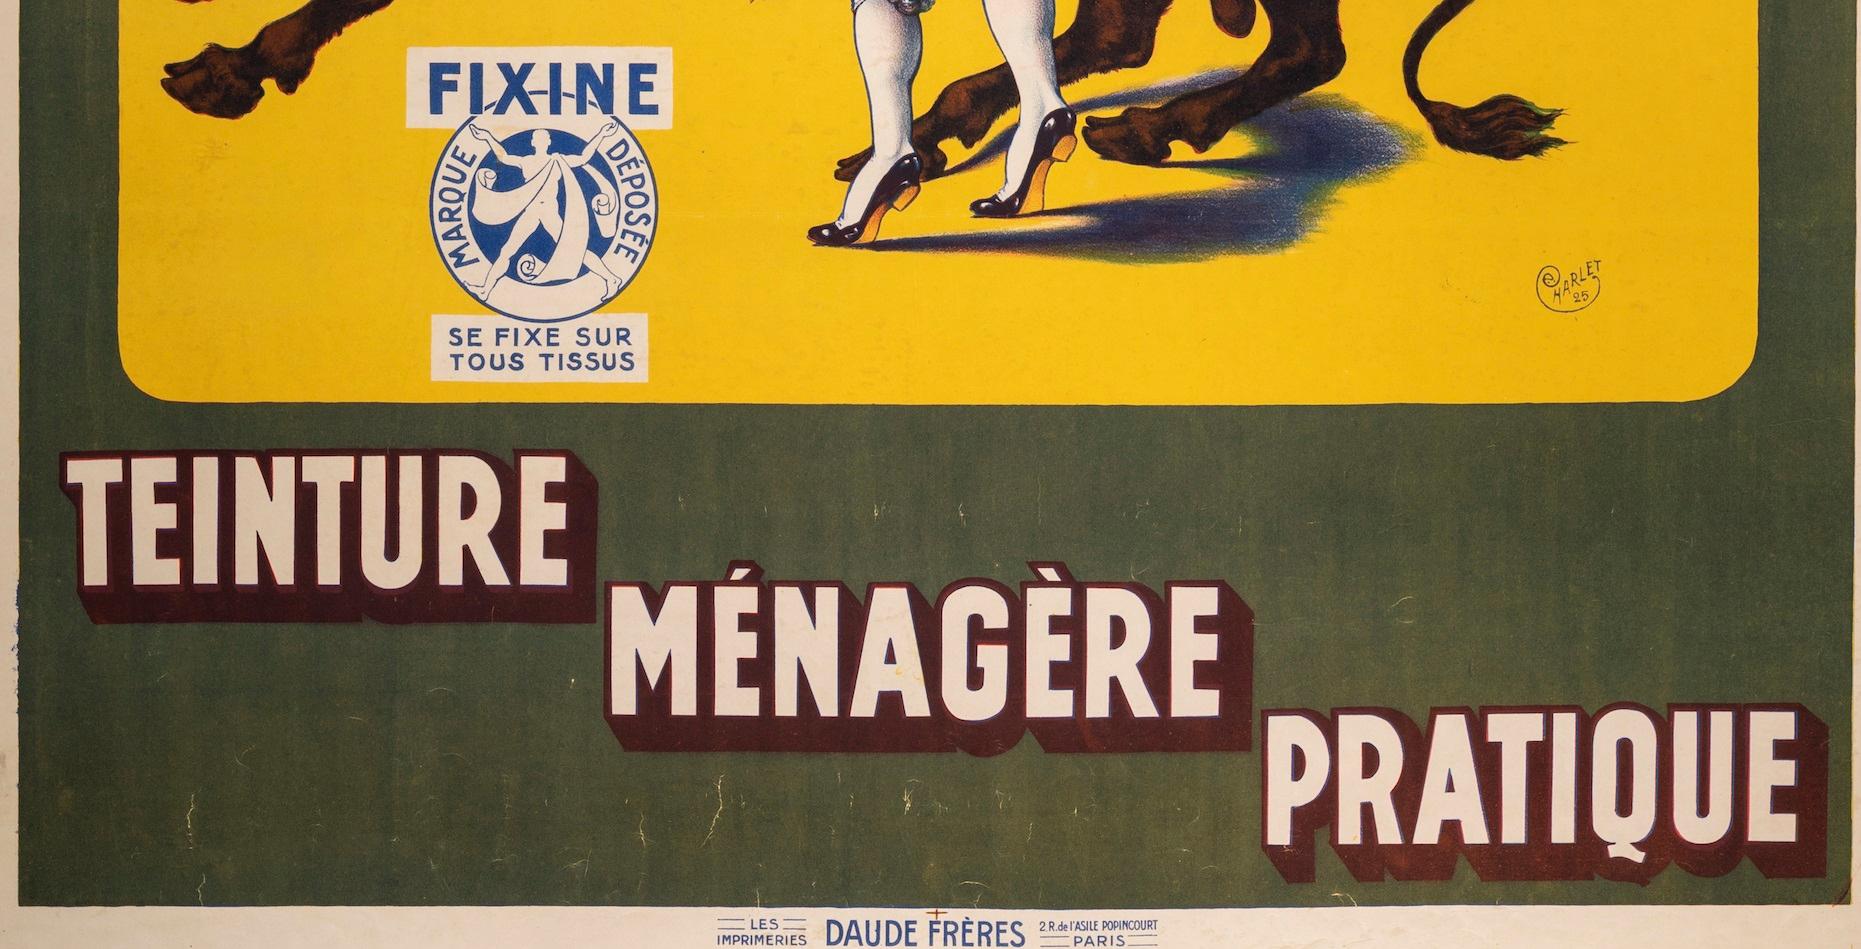 Original Vintage Poster for Fixine by Charlet in 1925.

Artist: Charlet
Title: Fixine, teinture ménagère pratique
Date: 1925
Size: 46.3 x 62 in / 117,5 x 157,5 cm
Printer : LES IMPRIMERIES DAUDE FRERES 2.R. De l'ASILE POPINCOURT